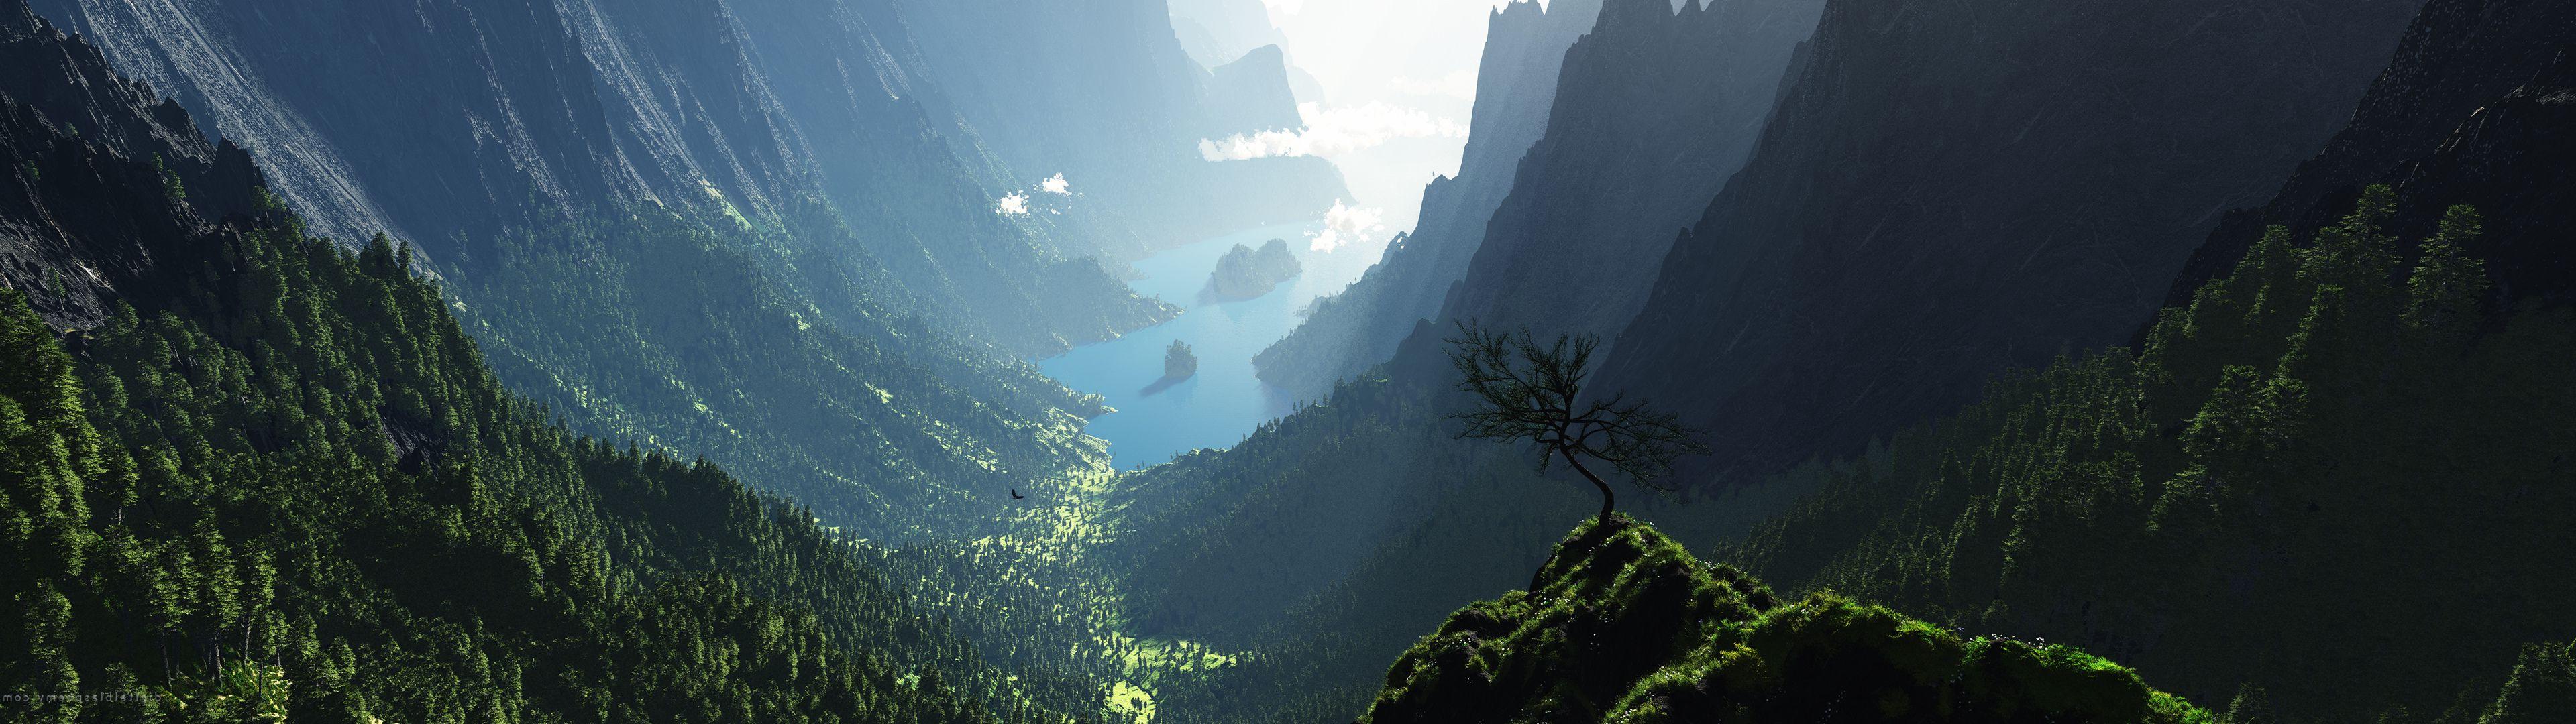 hintergrundbild mit zwei monitoren,natur,natürliche landschaft,berg,bergstation,himmel